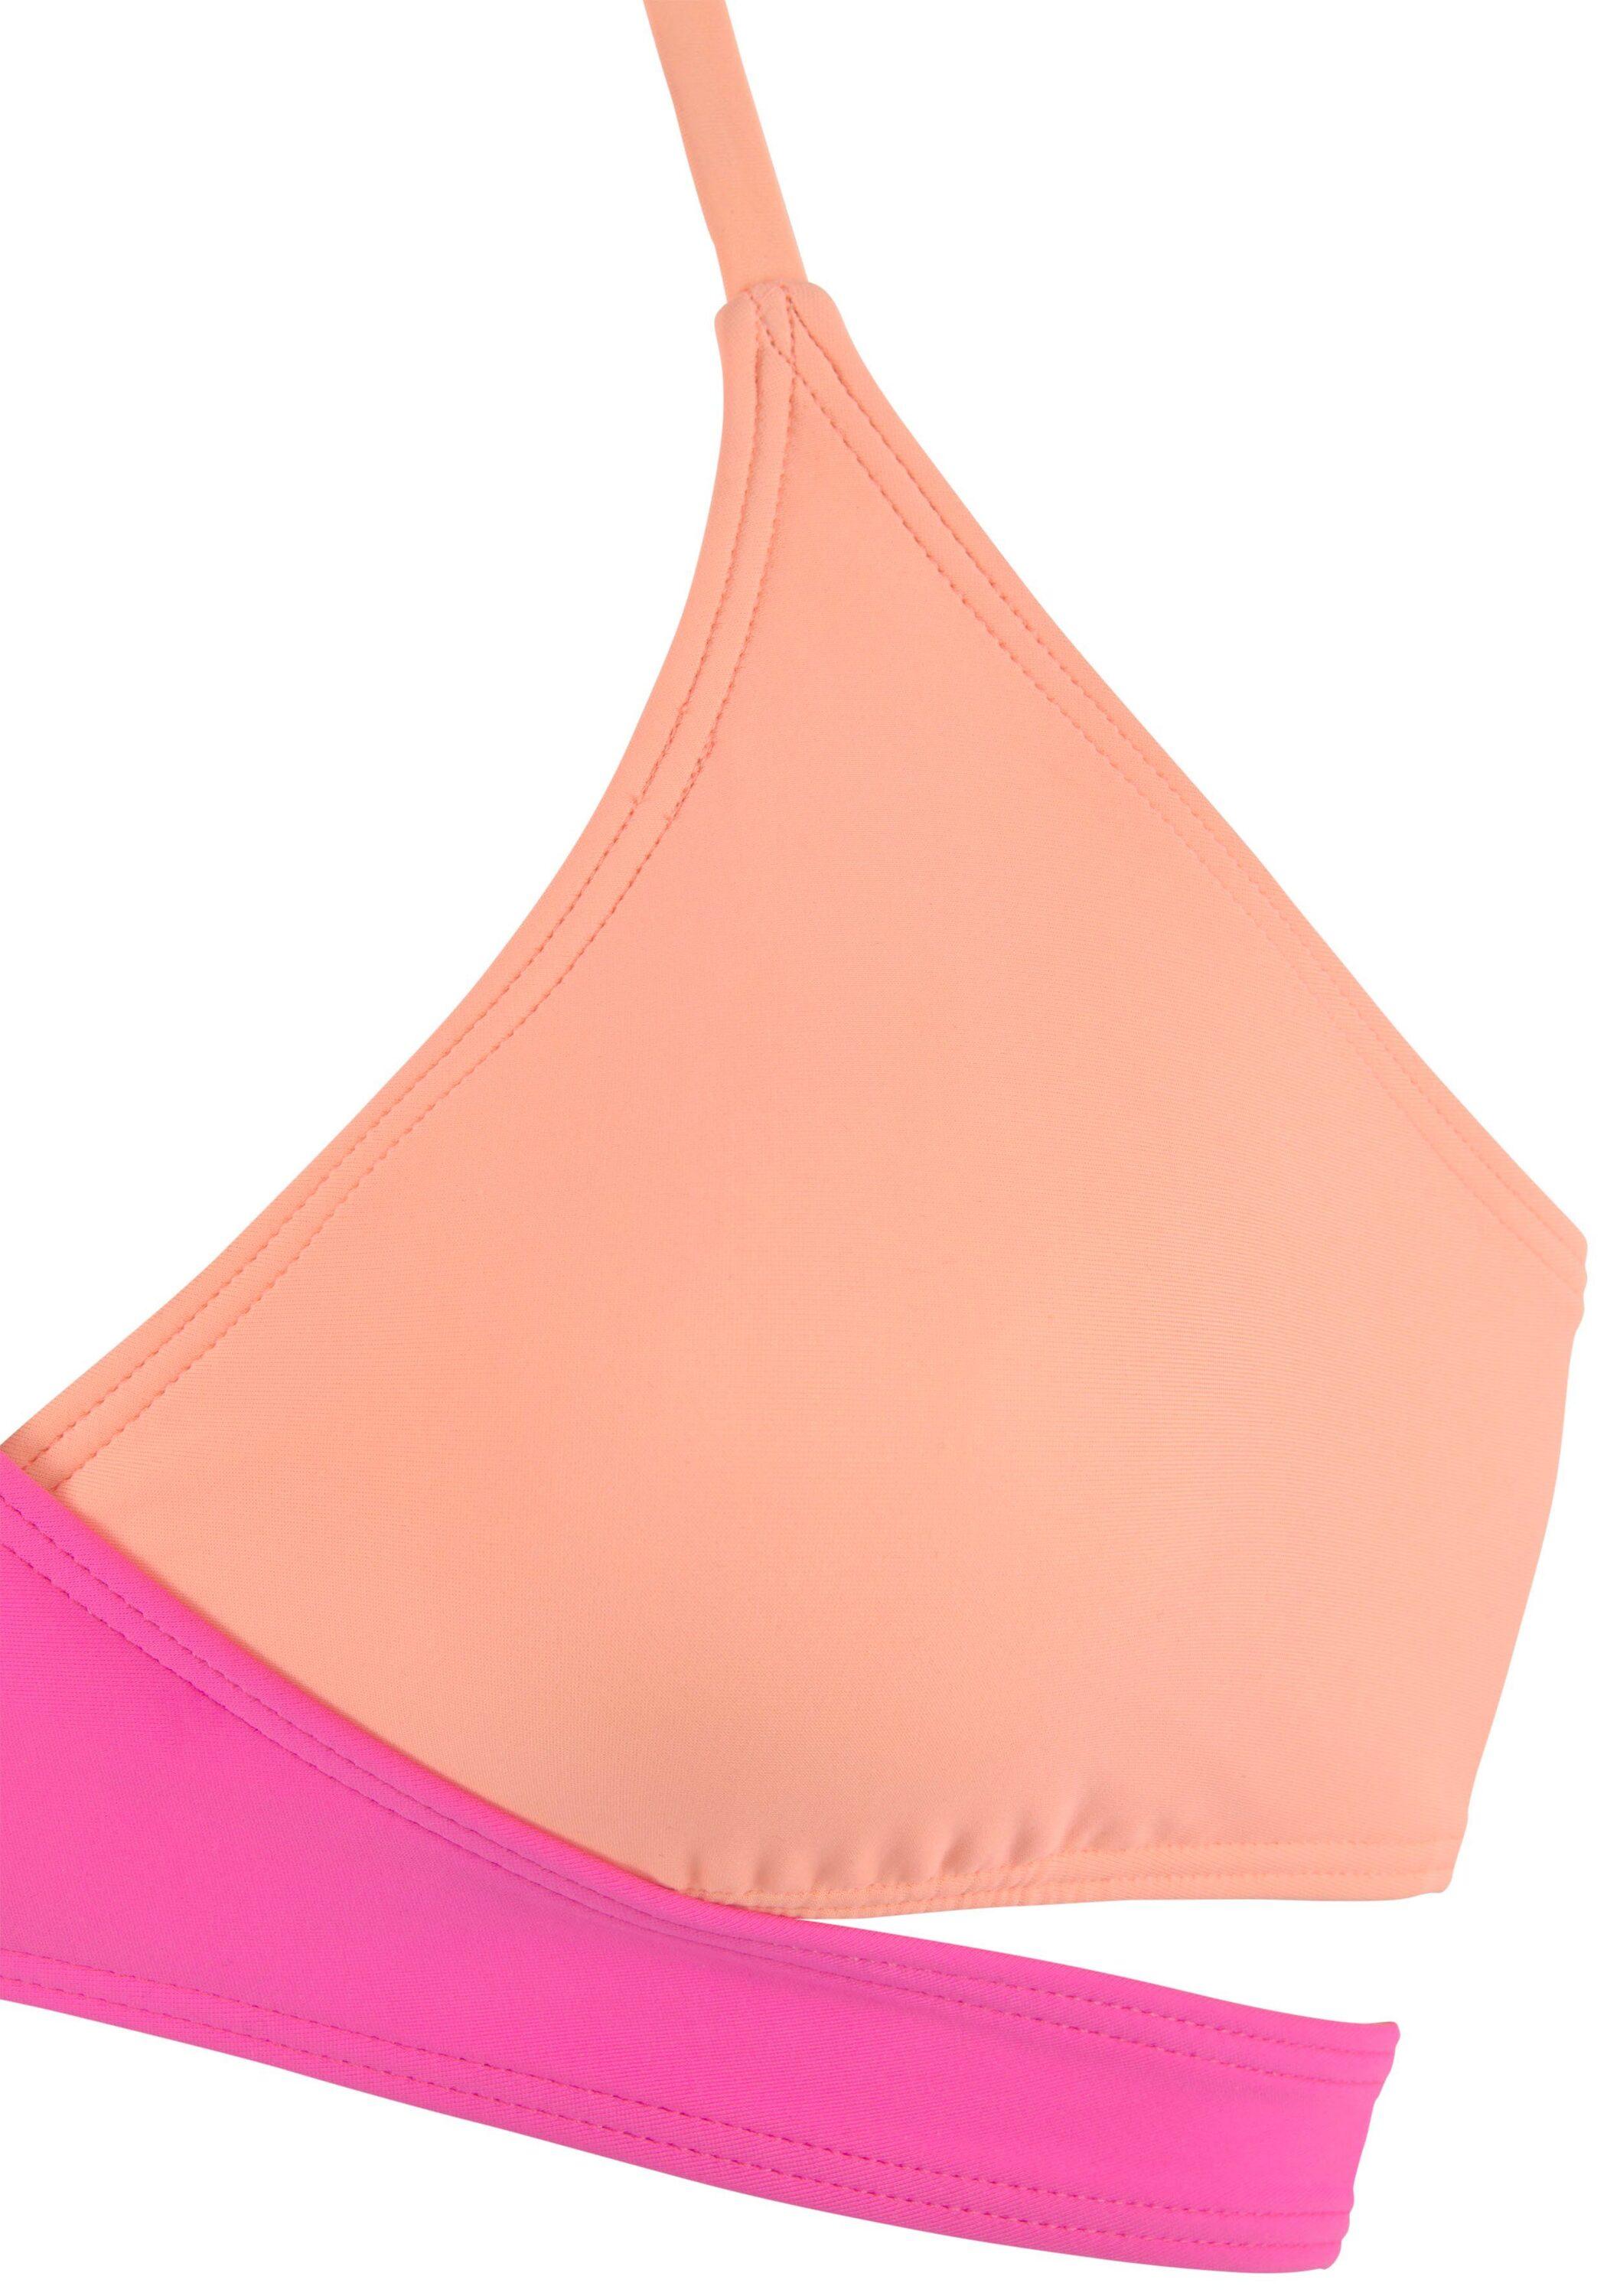 Damen Set pink-orange Online im Bikini Shop kaufen SportScheck Bench von